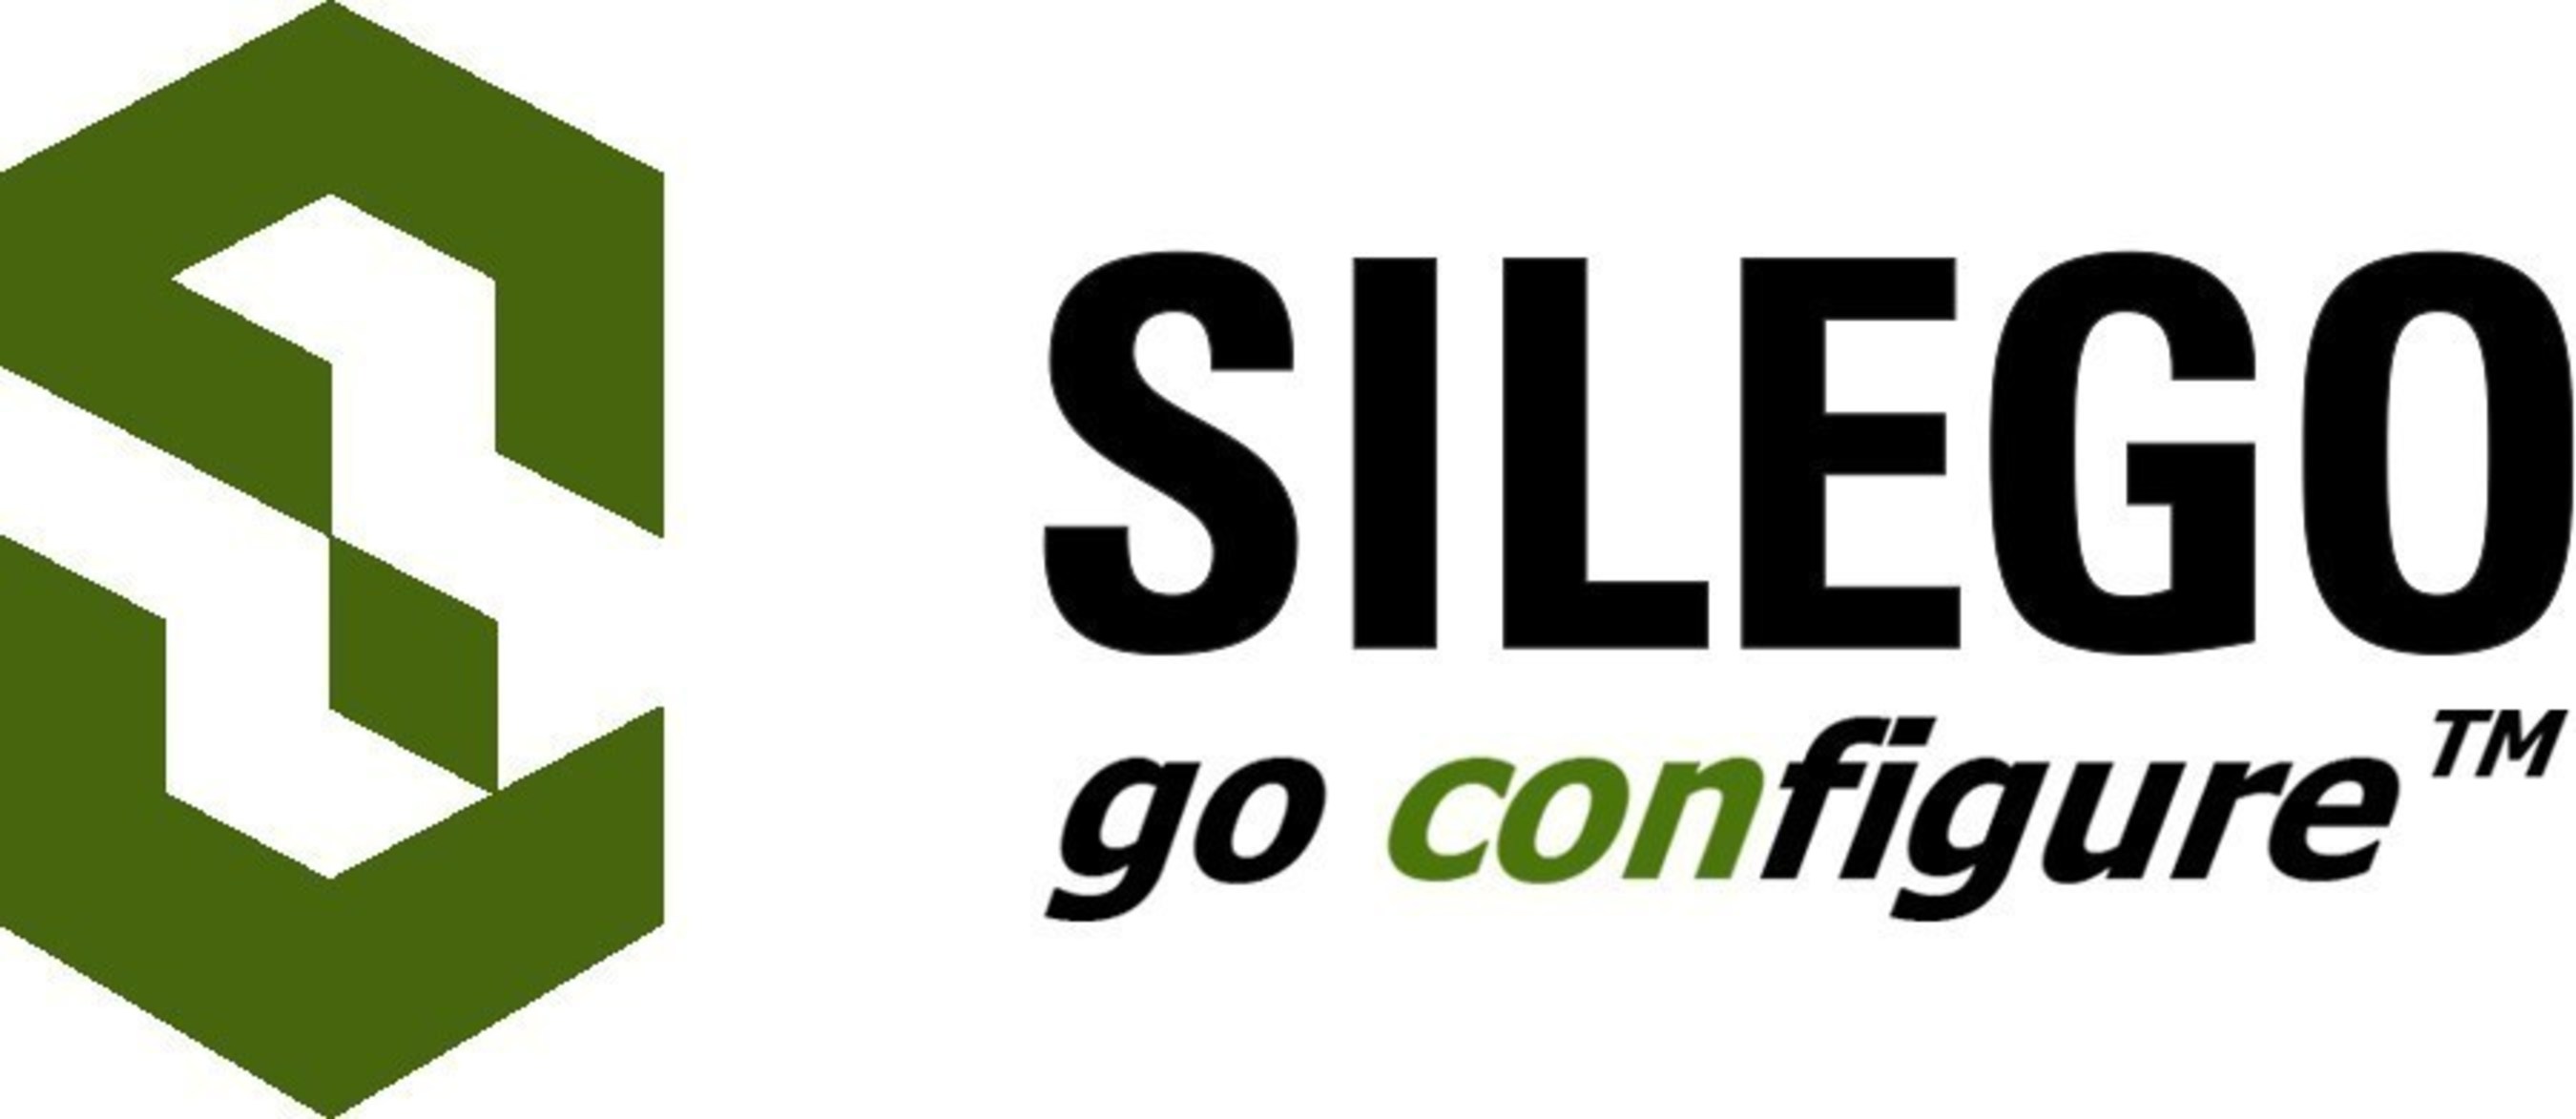 Silego Technology Logo;Company's URL: www.silego.com